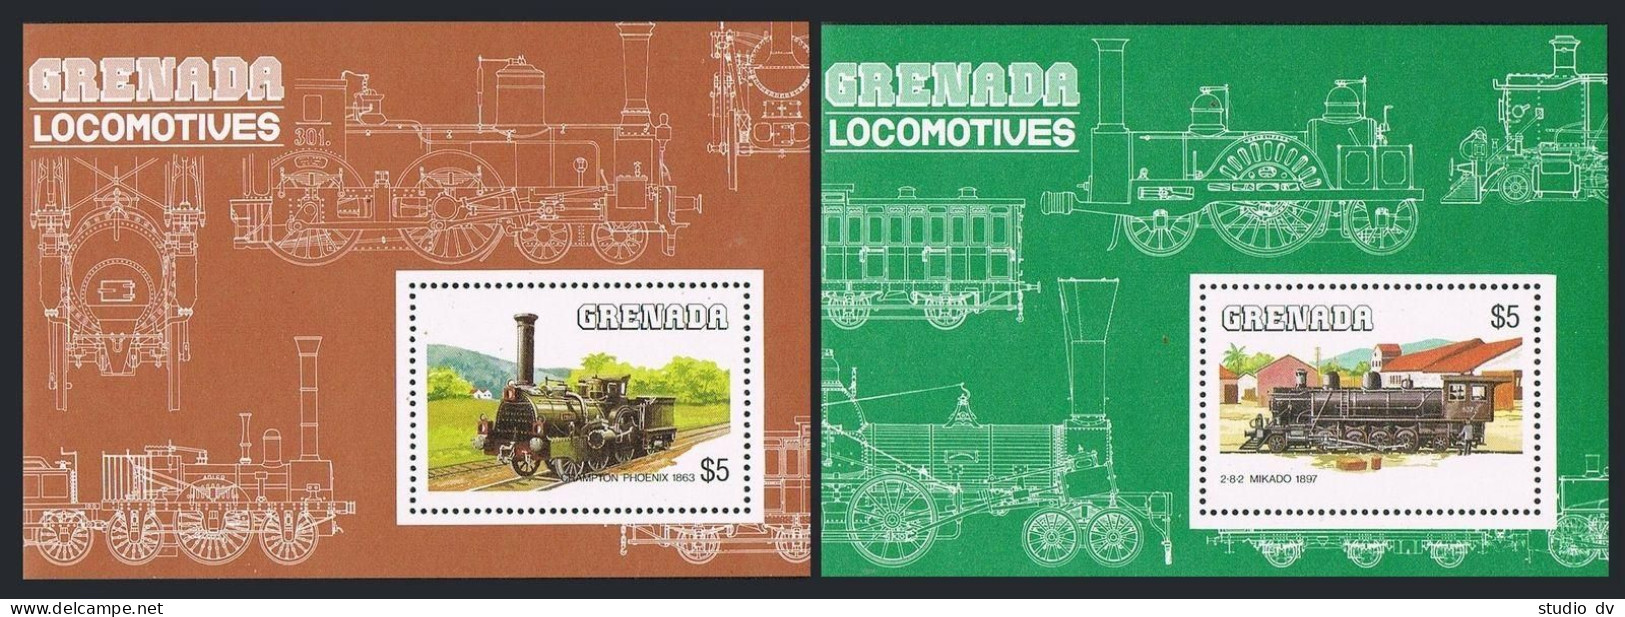 Grenada 1232-1241,MNH.Michel 1325-1332,Bl.132-133. 19 Century Locomotives,1984. - Grenade (1974-...)